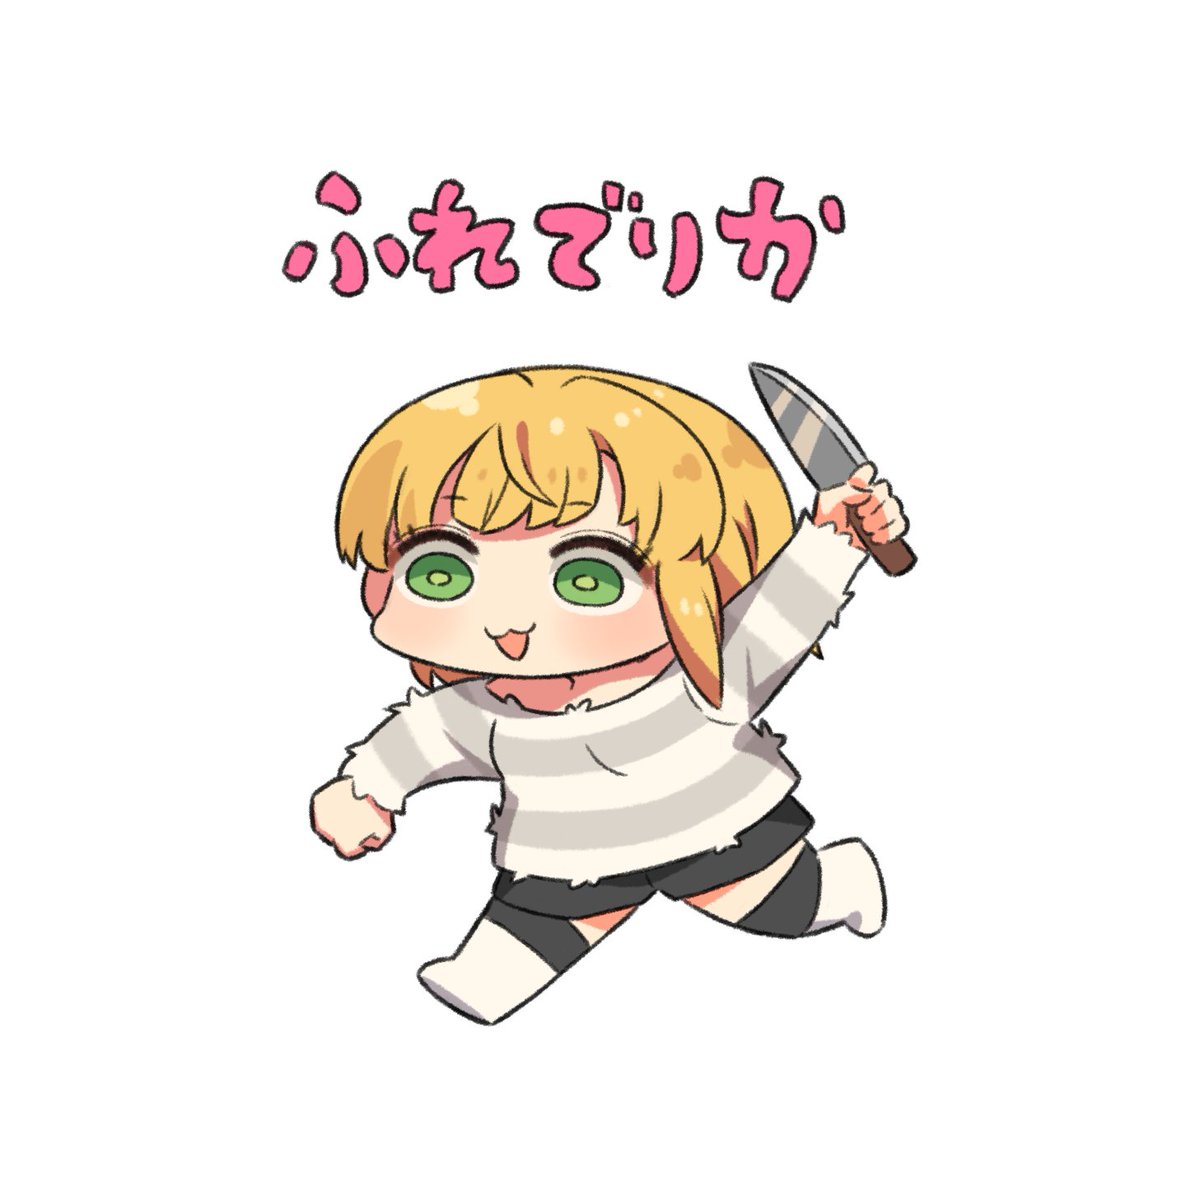 miyamoto frederica 1girl blonde hair green eyes solo chibi holding knife white background  illustration images